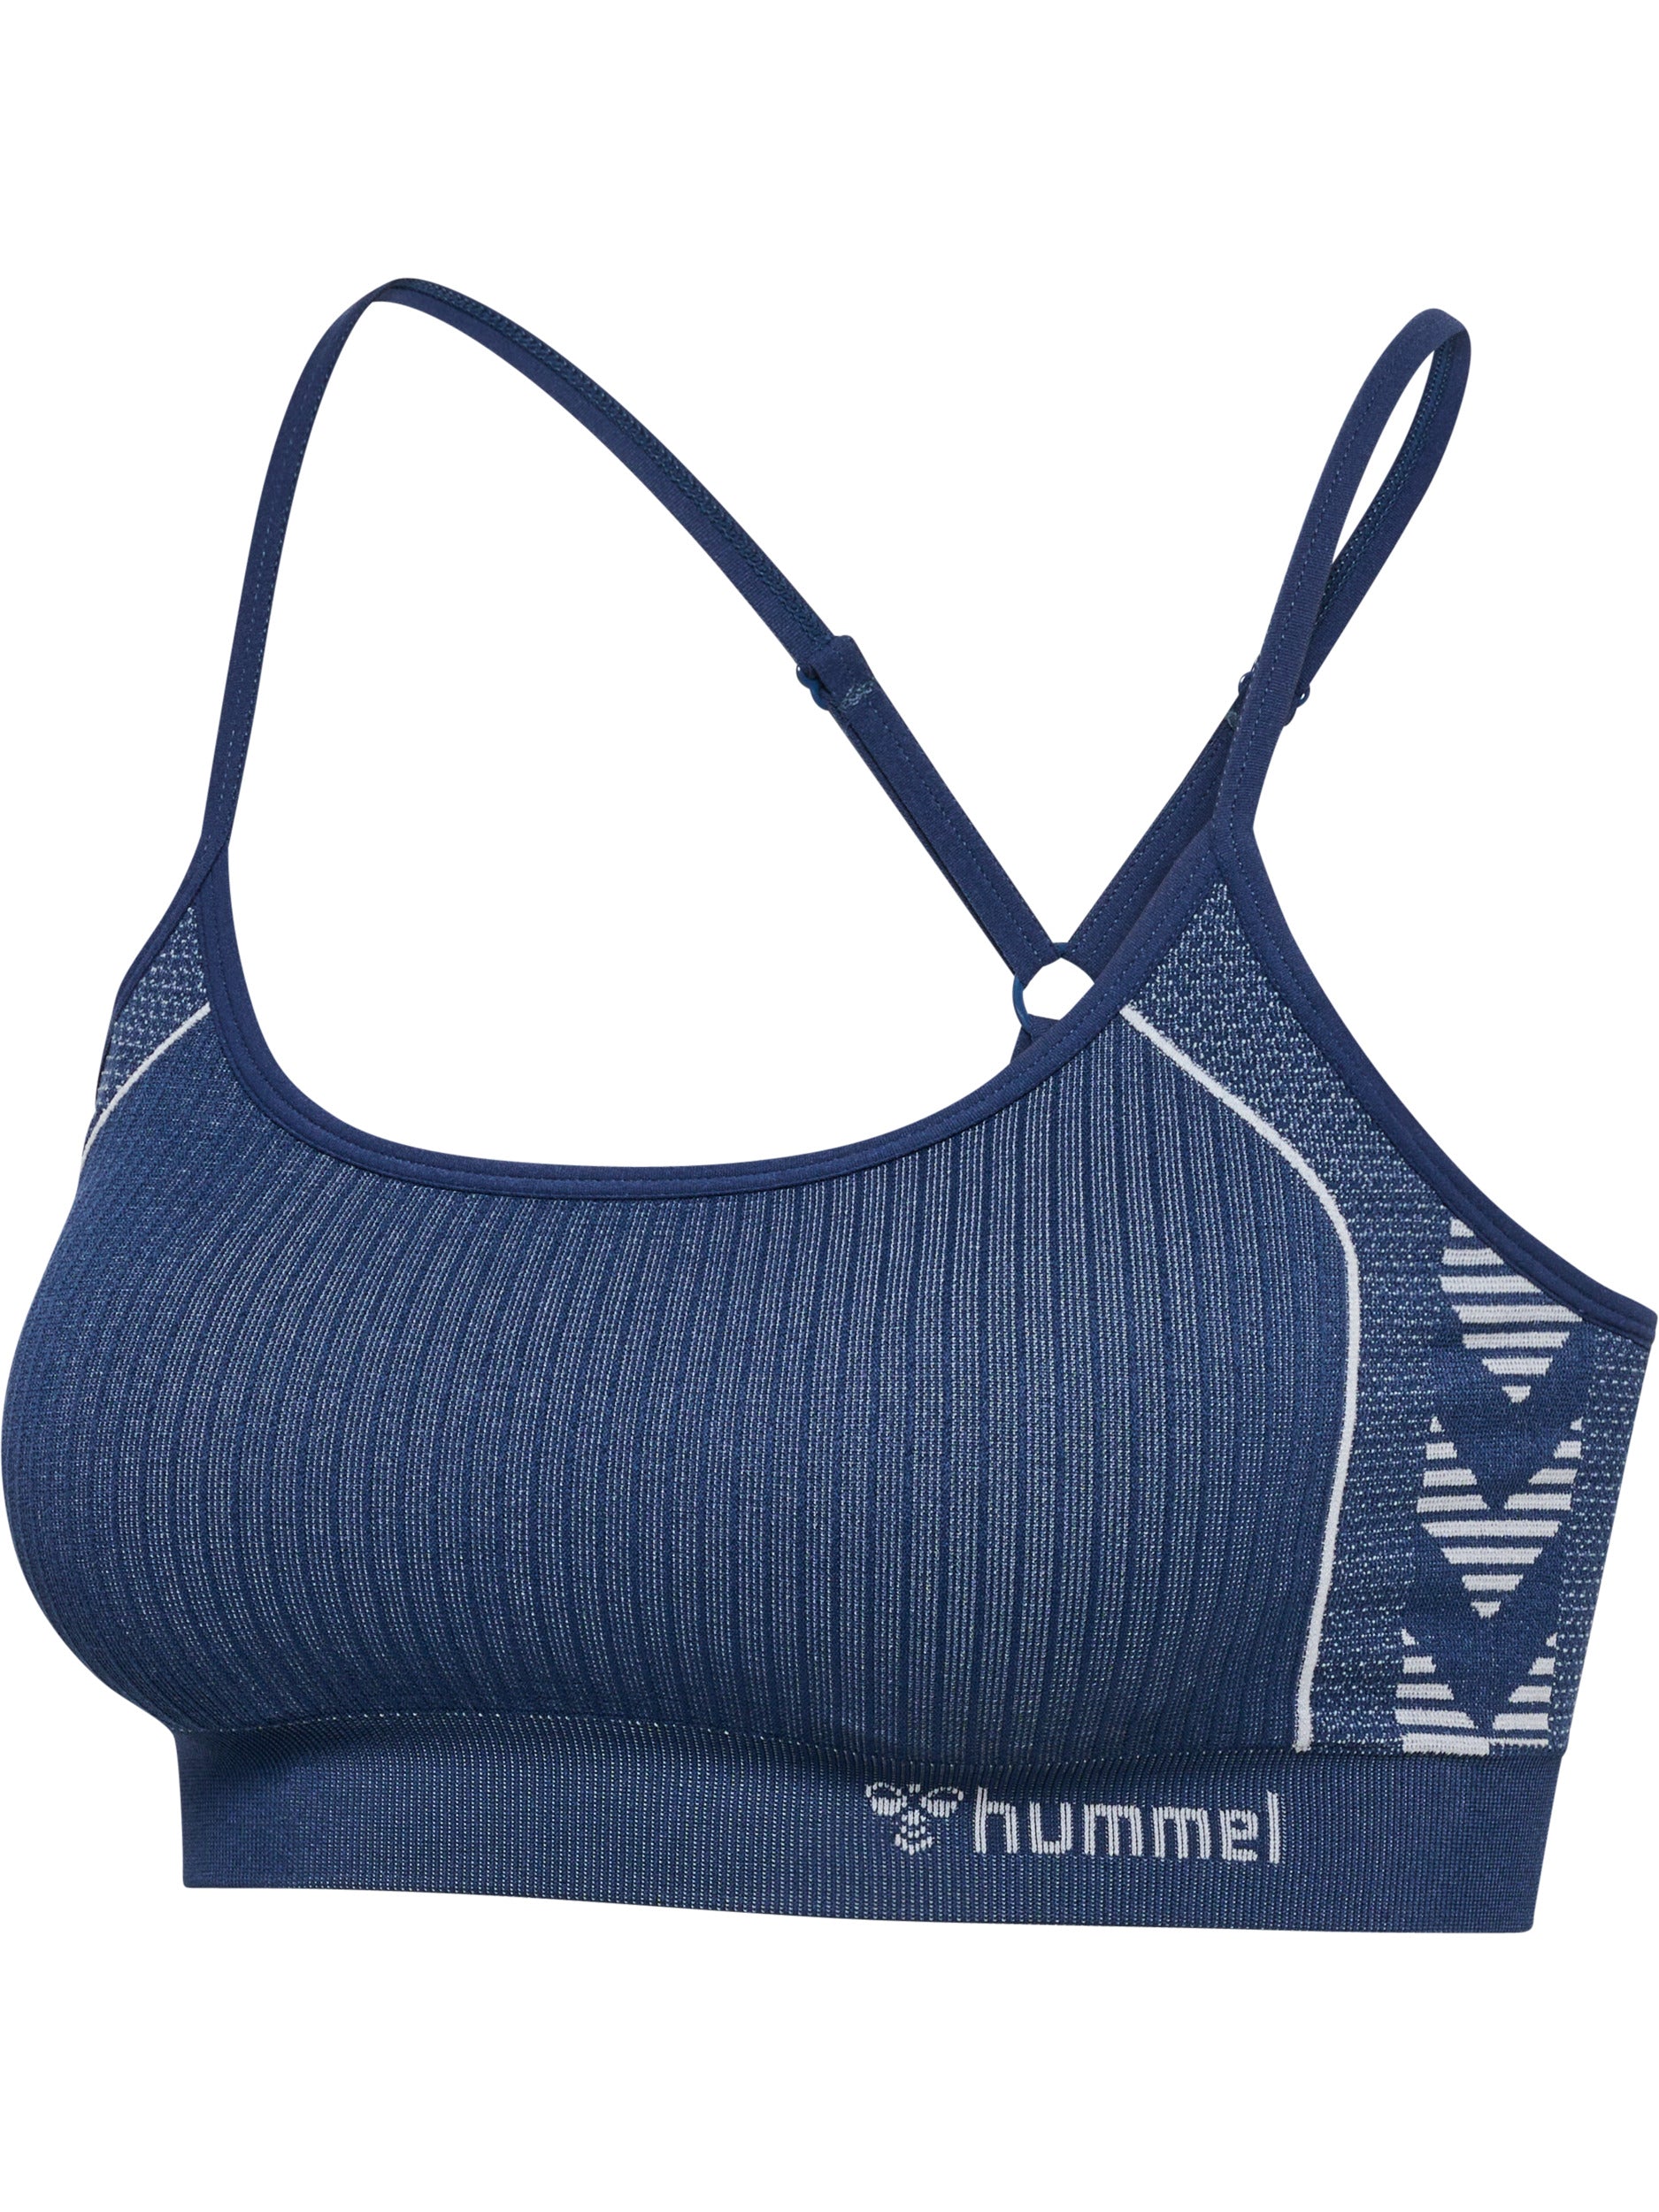 Brug Hummel Blaze Seamless Sports Top - Insignia Blue til en forbedret oplevelse